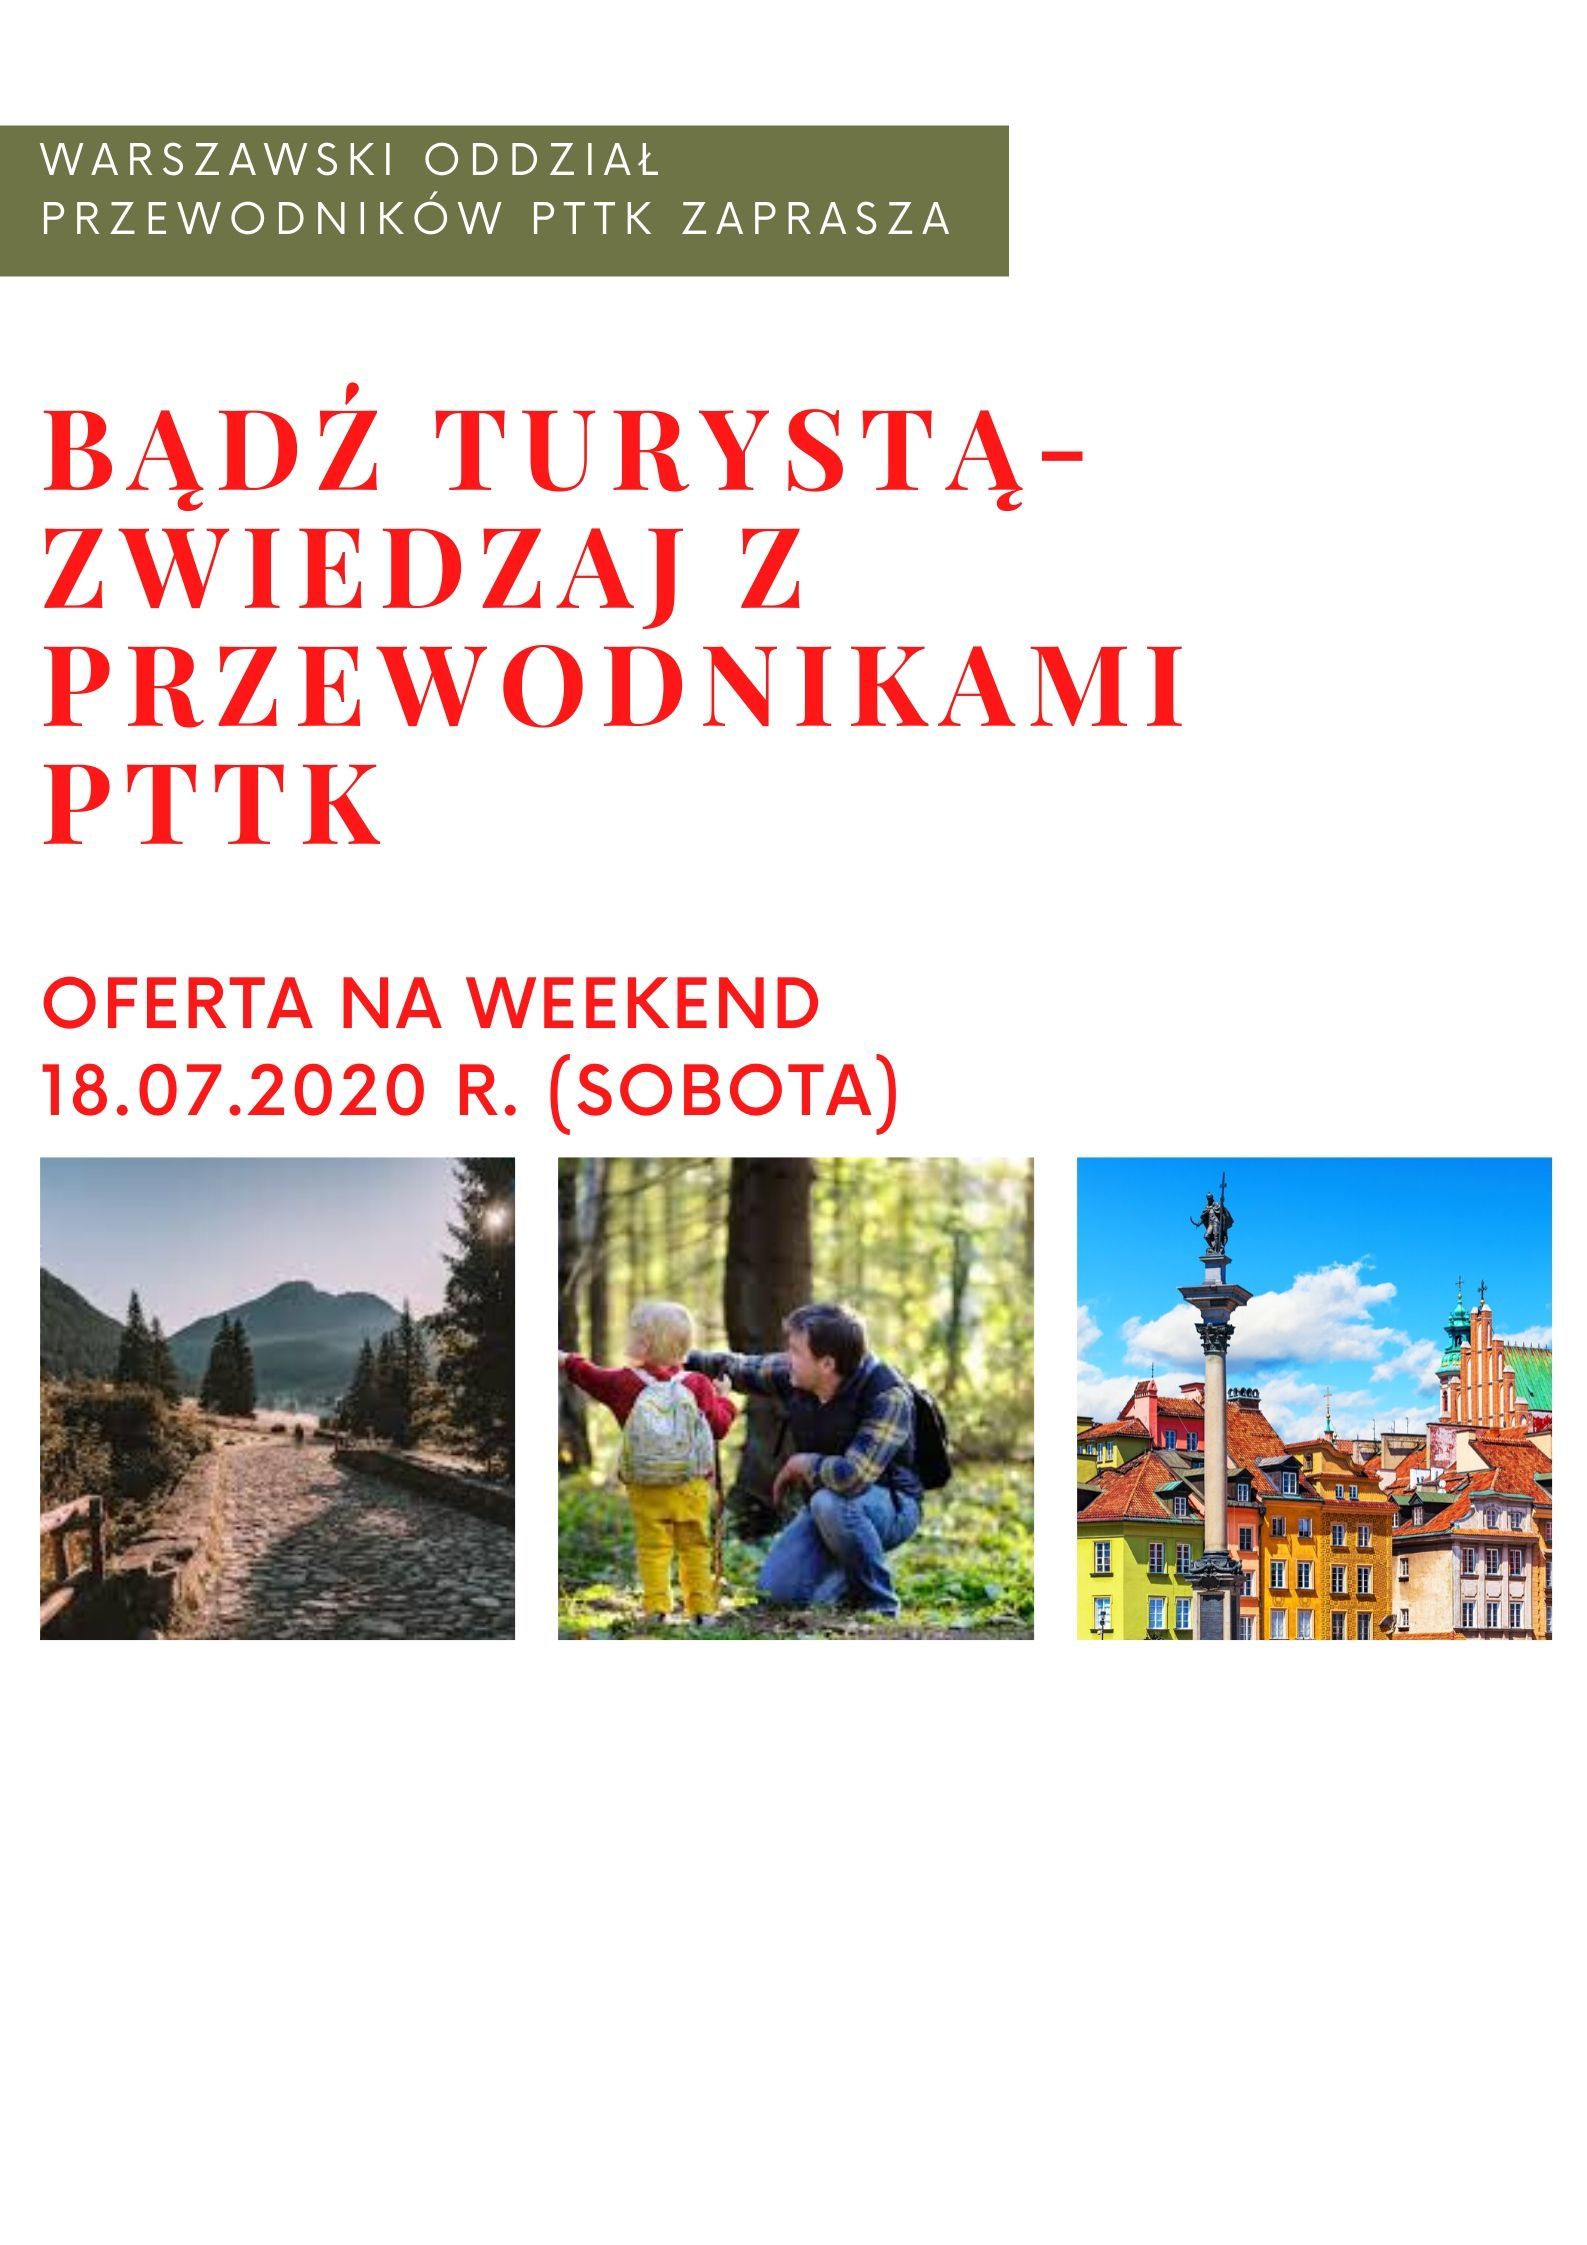 Bądź turystą w Warszawie- spacery z przewodnikami PTTK - 18.07.2020 r. (sobota)